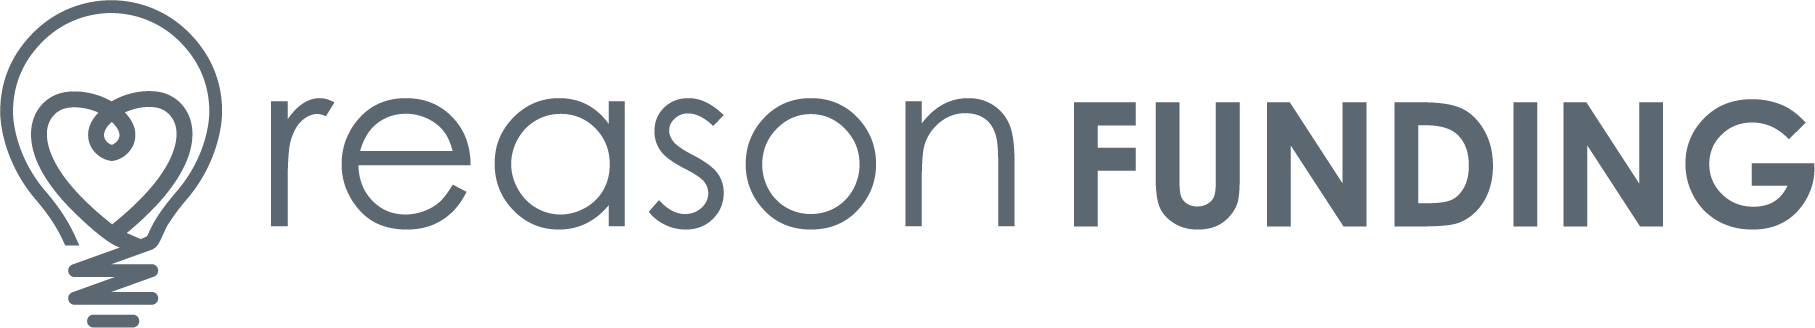 Reason Funding logo